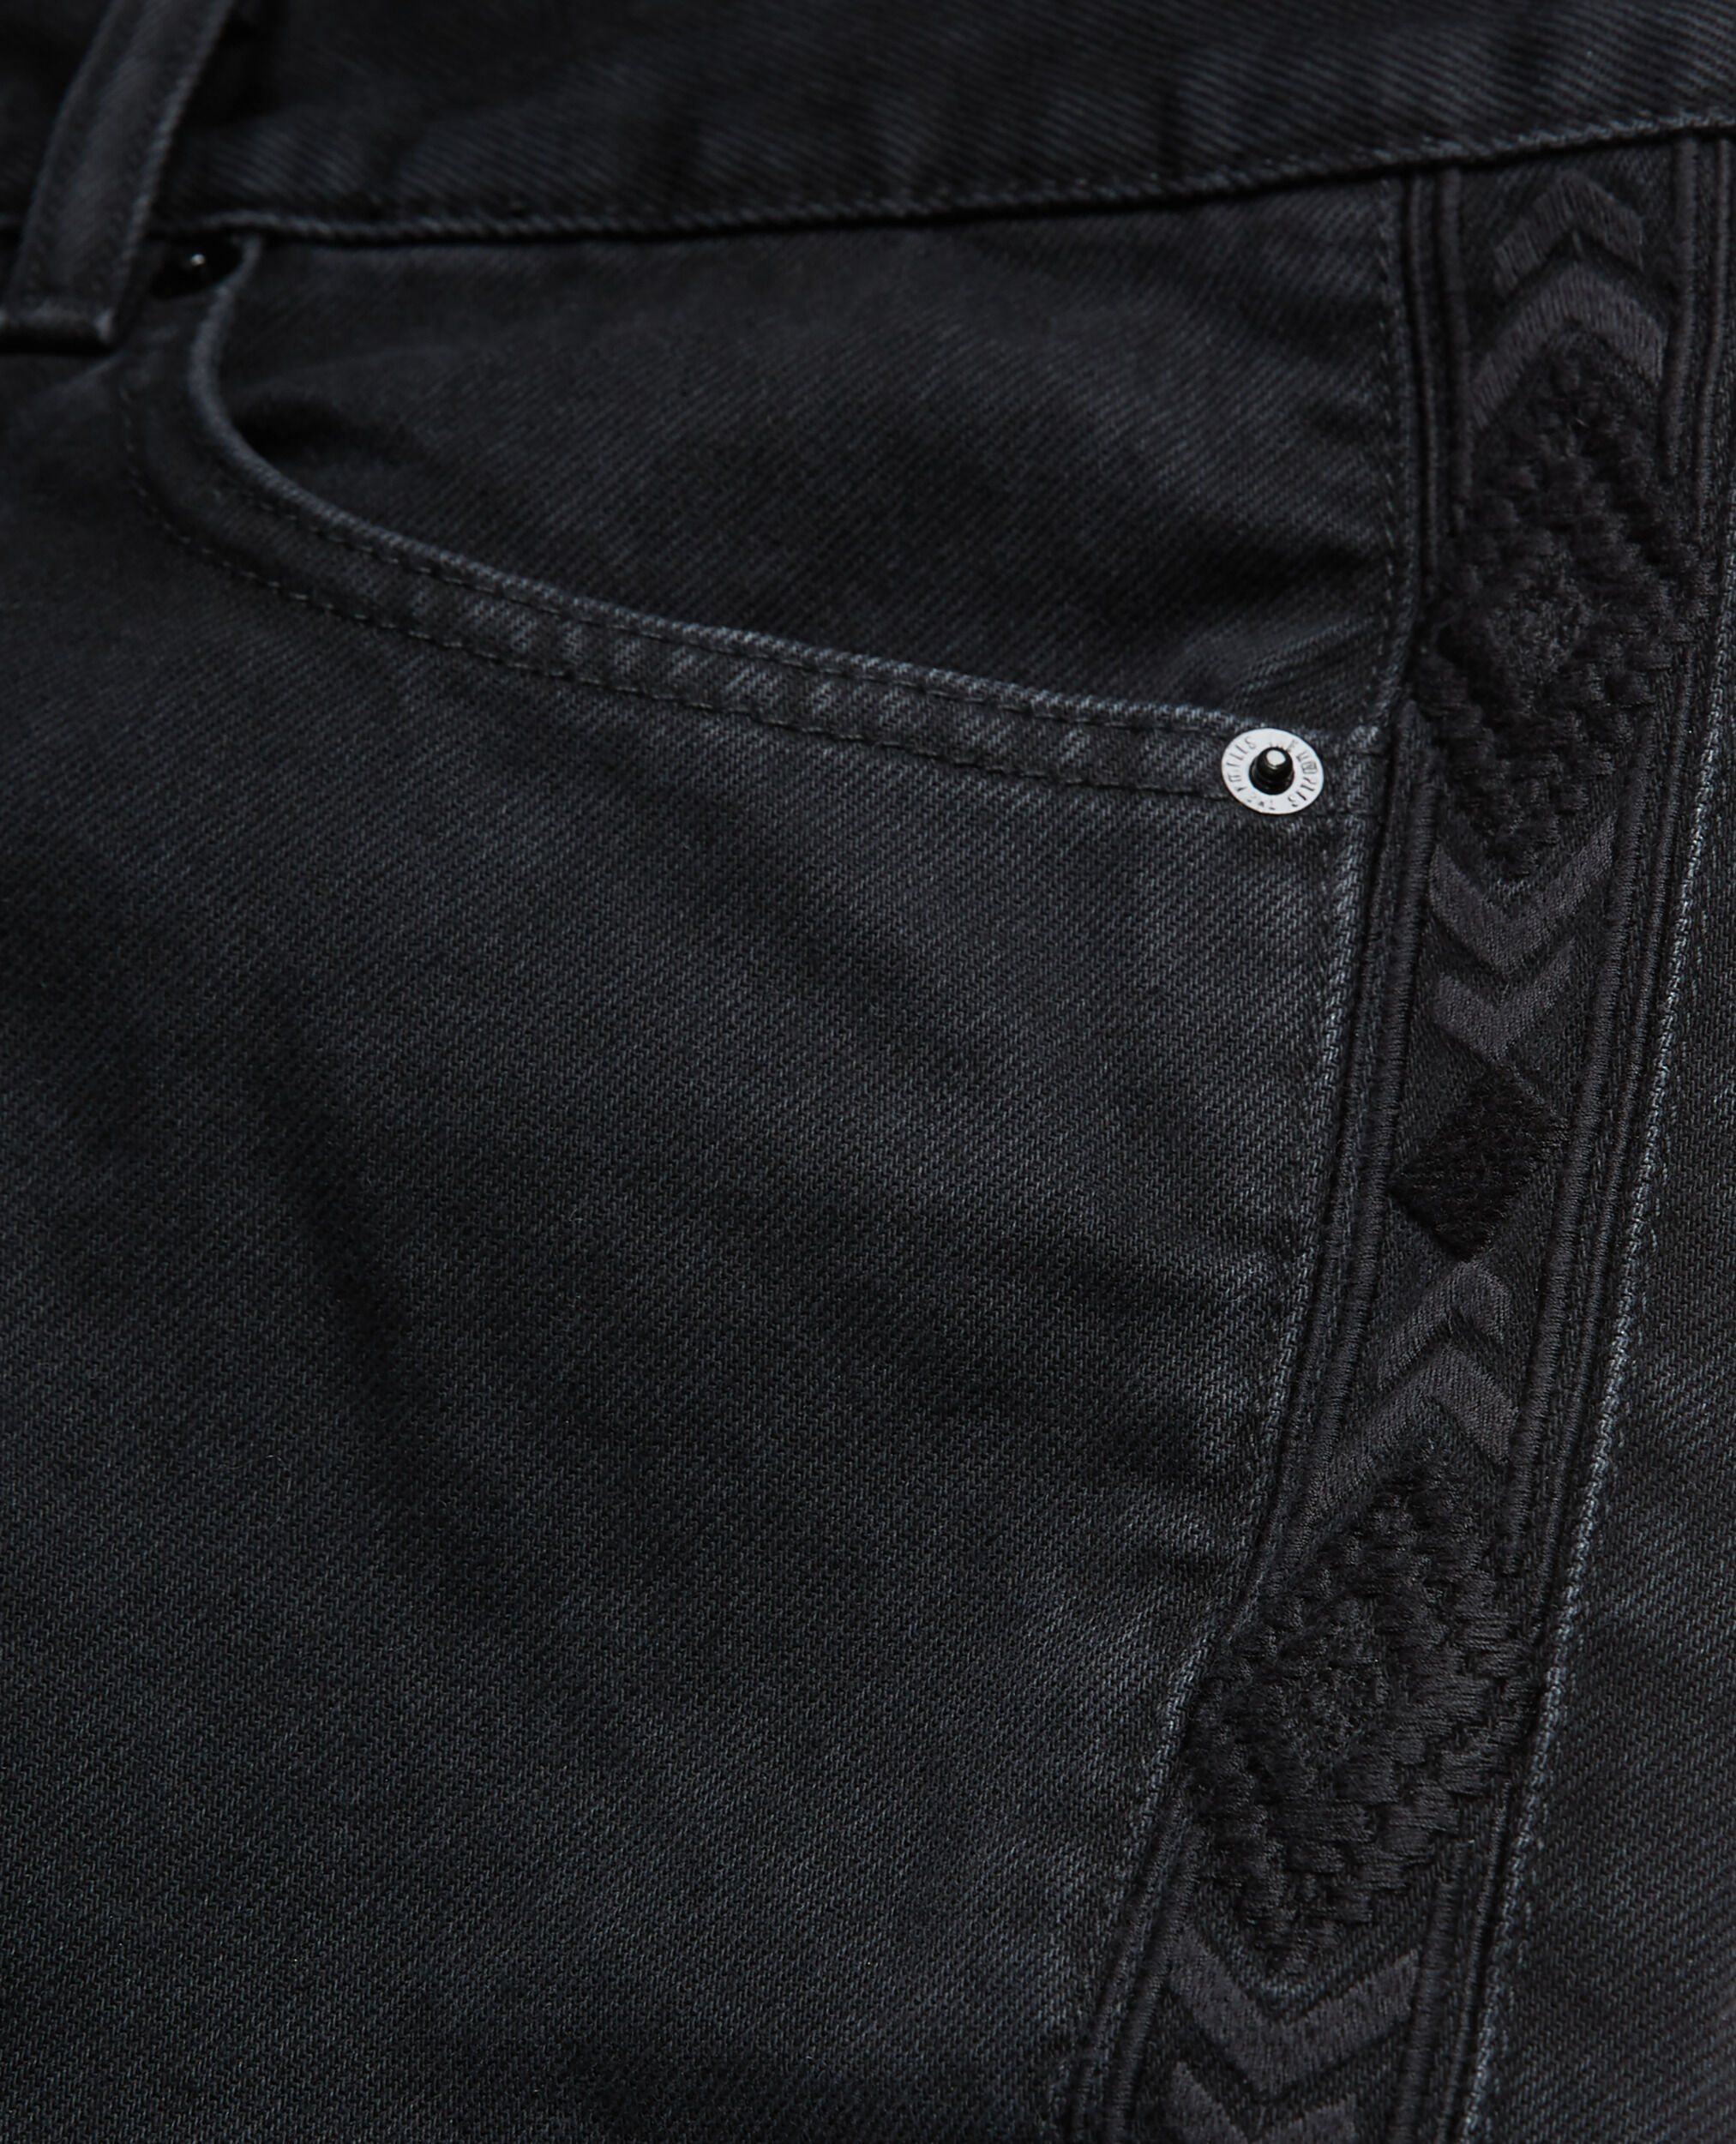 Black jeans, BLACK WASHED, hi-res image number null